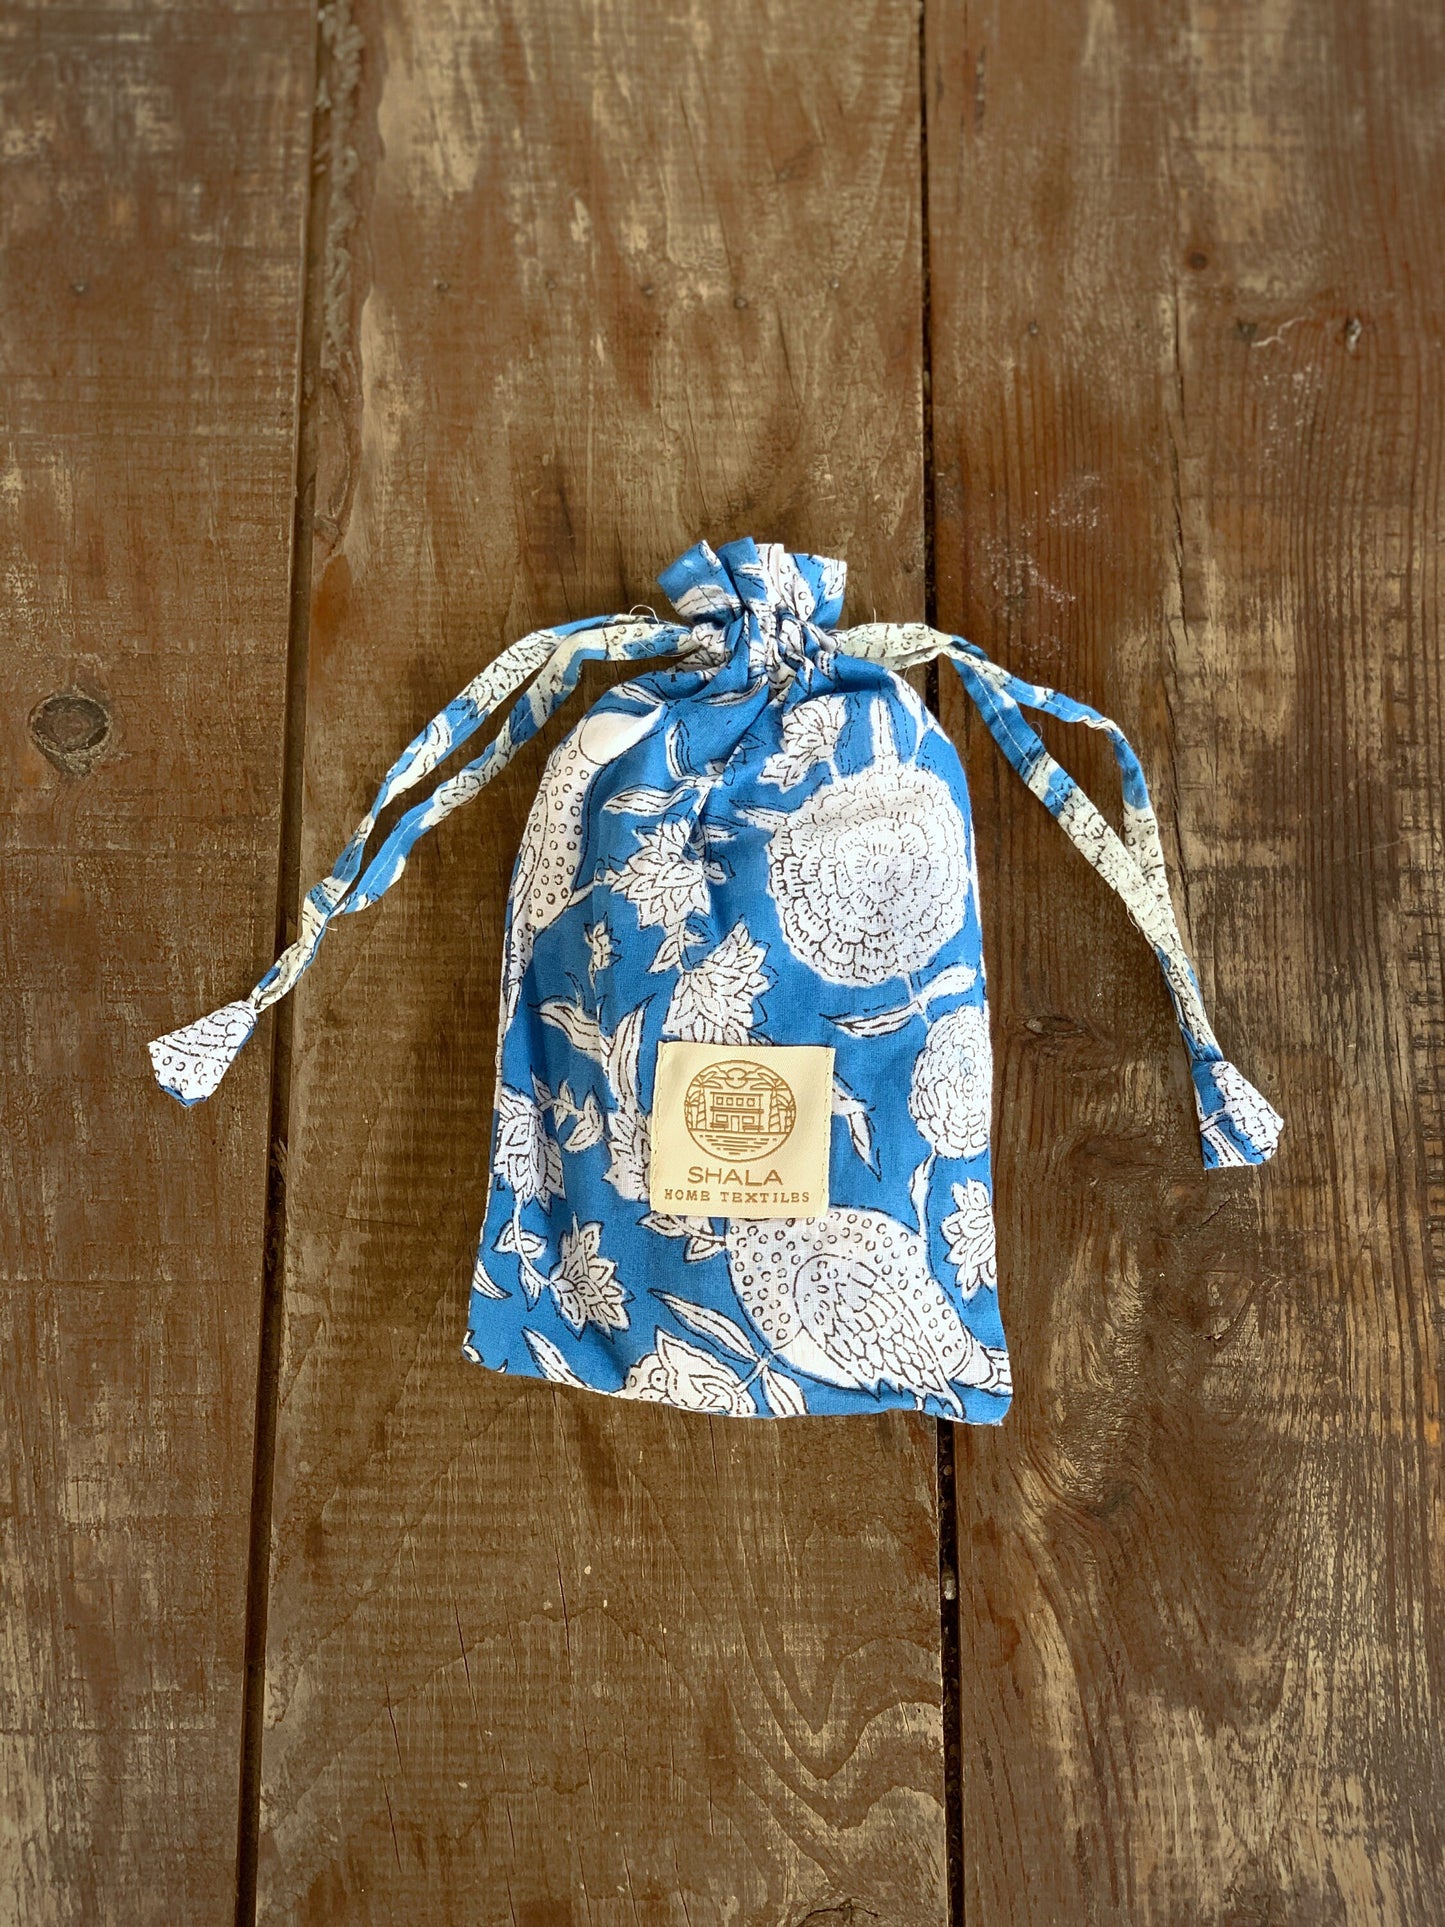 Zapatillas de viaje enguatadas con bolsa a juego · Algodón puro estampado block print en India · Zapatillas de baño ducha · Azul flor blanco